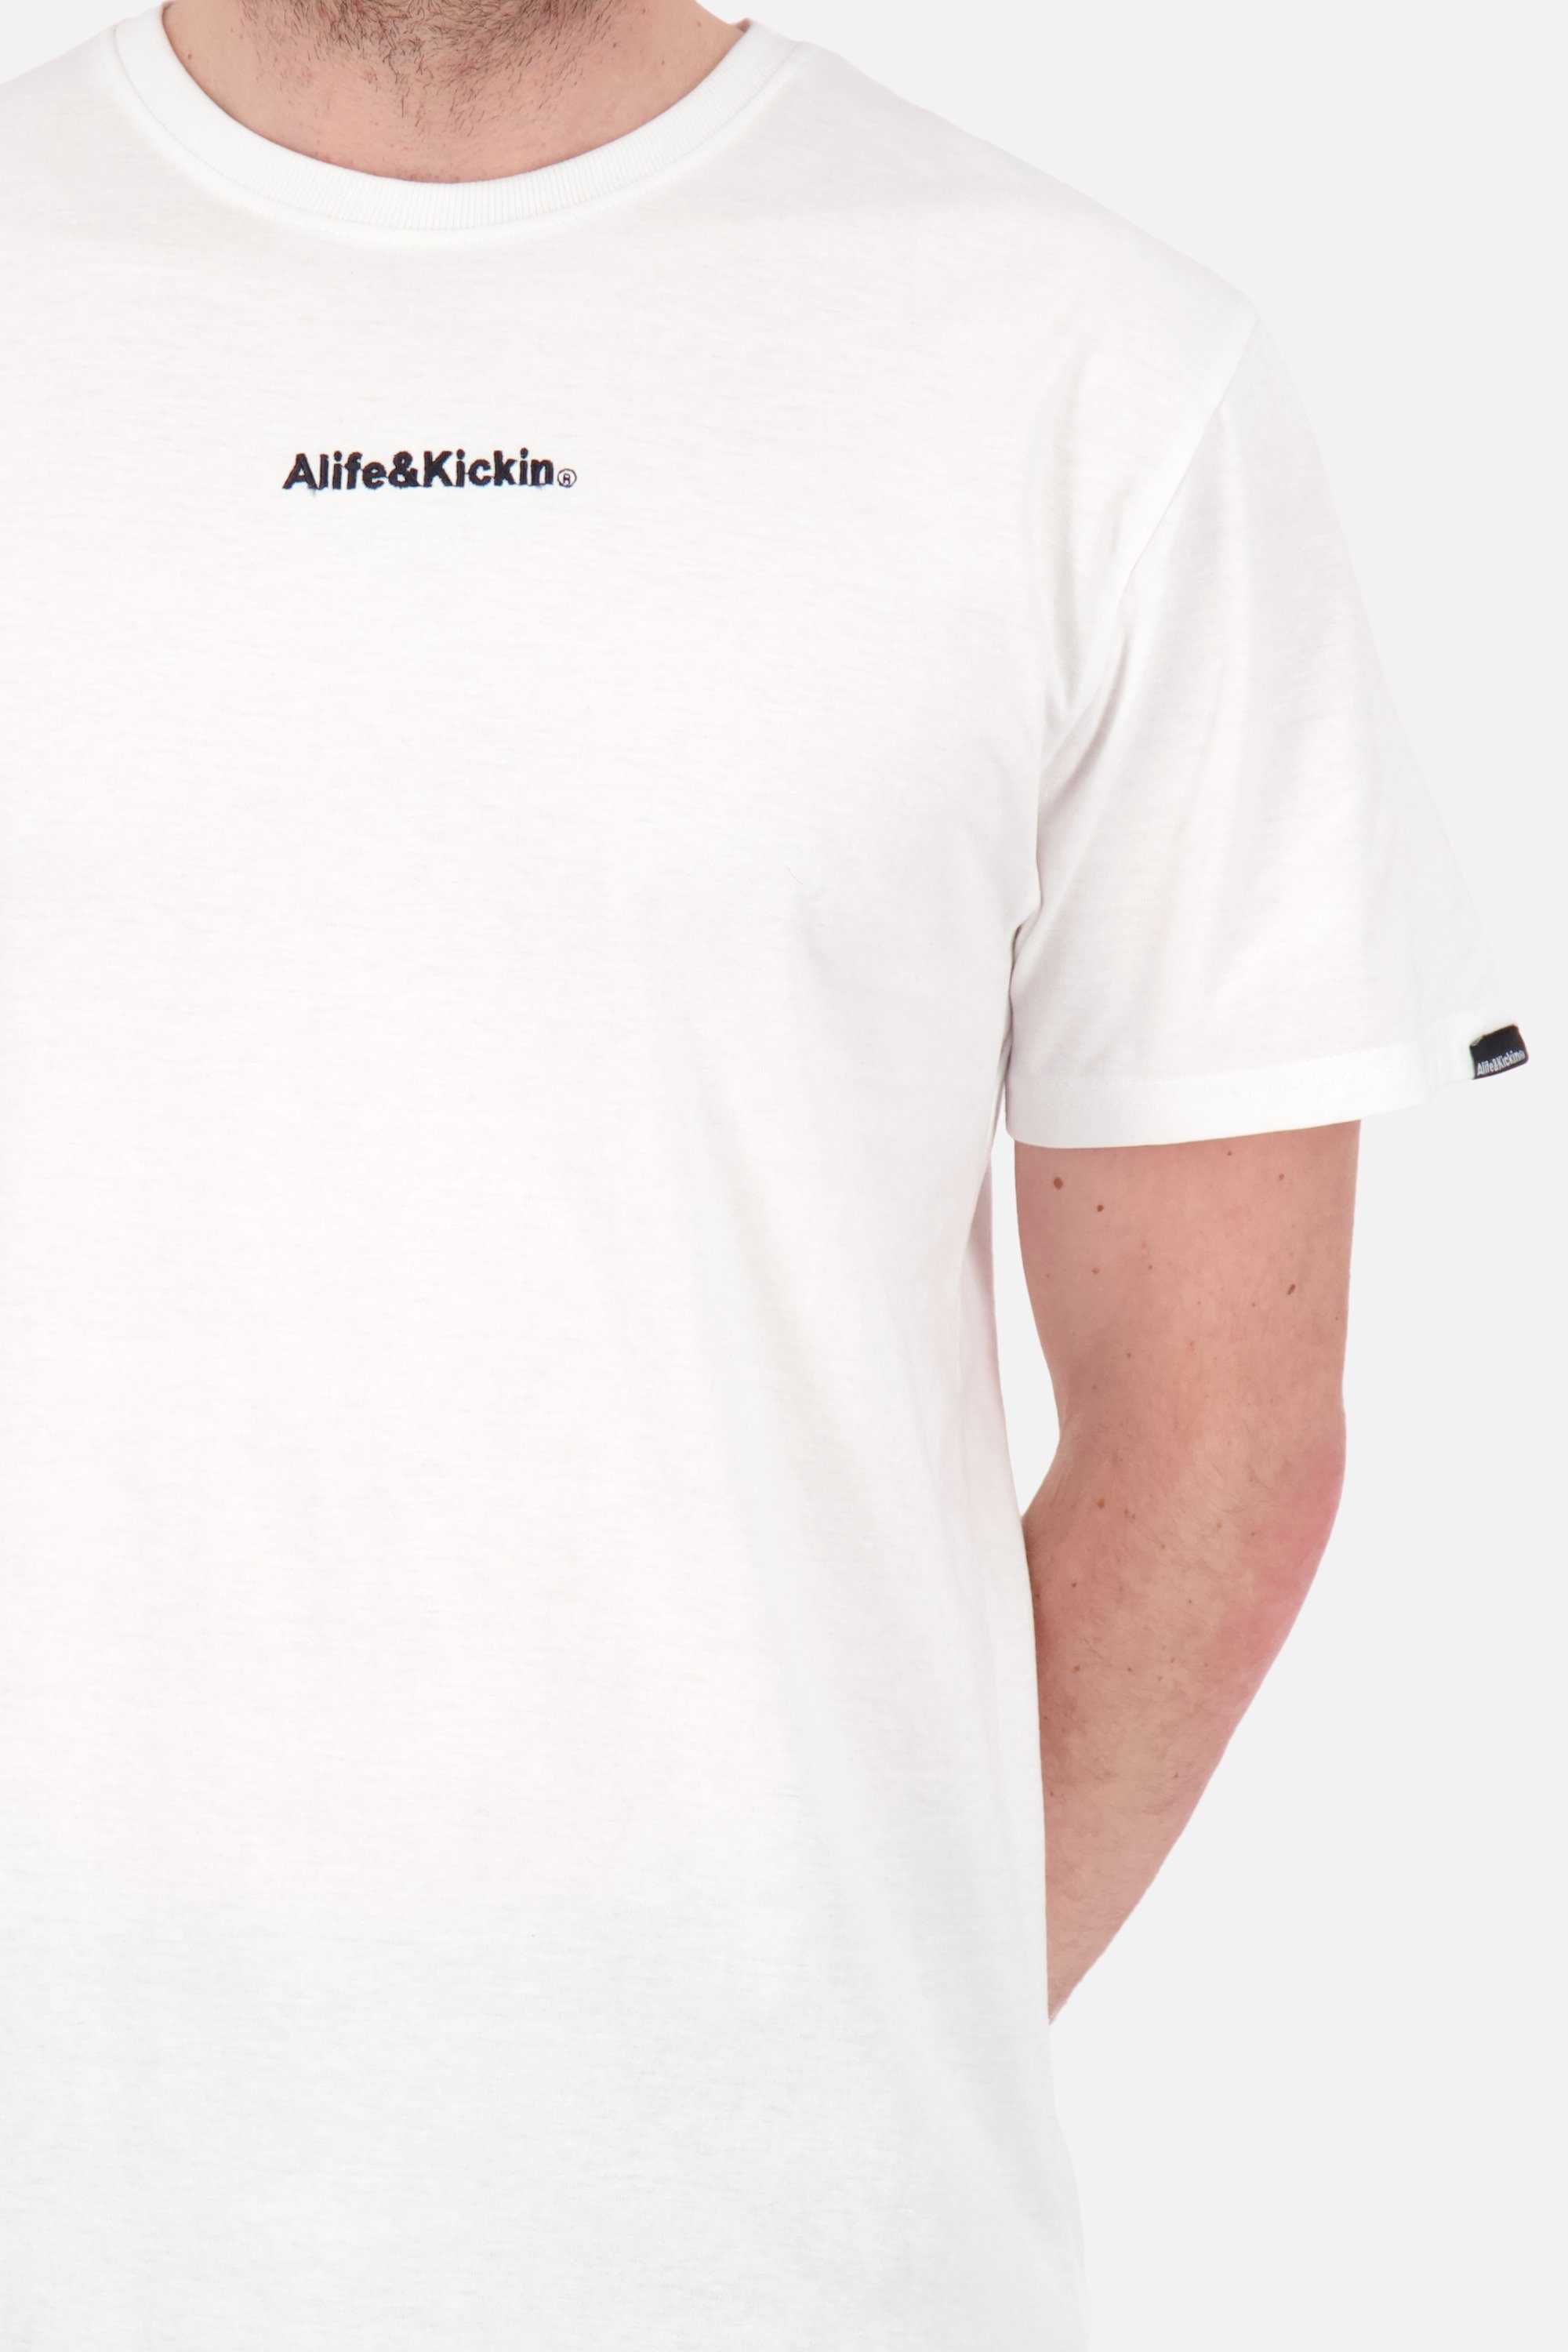 Alife Kurzarmshirt, Shirt Herren white Rundhalsshirt AlfieAK E Shirt & Kickin